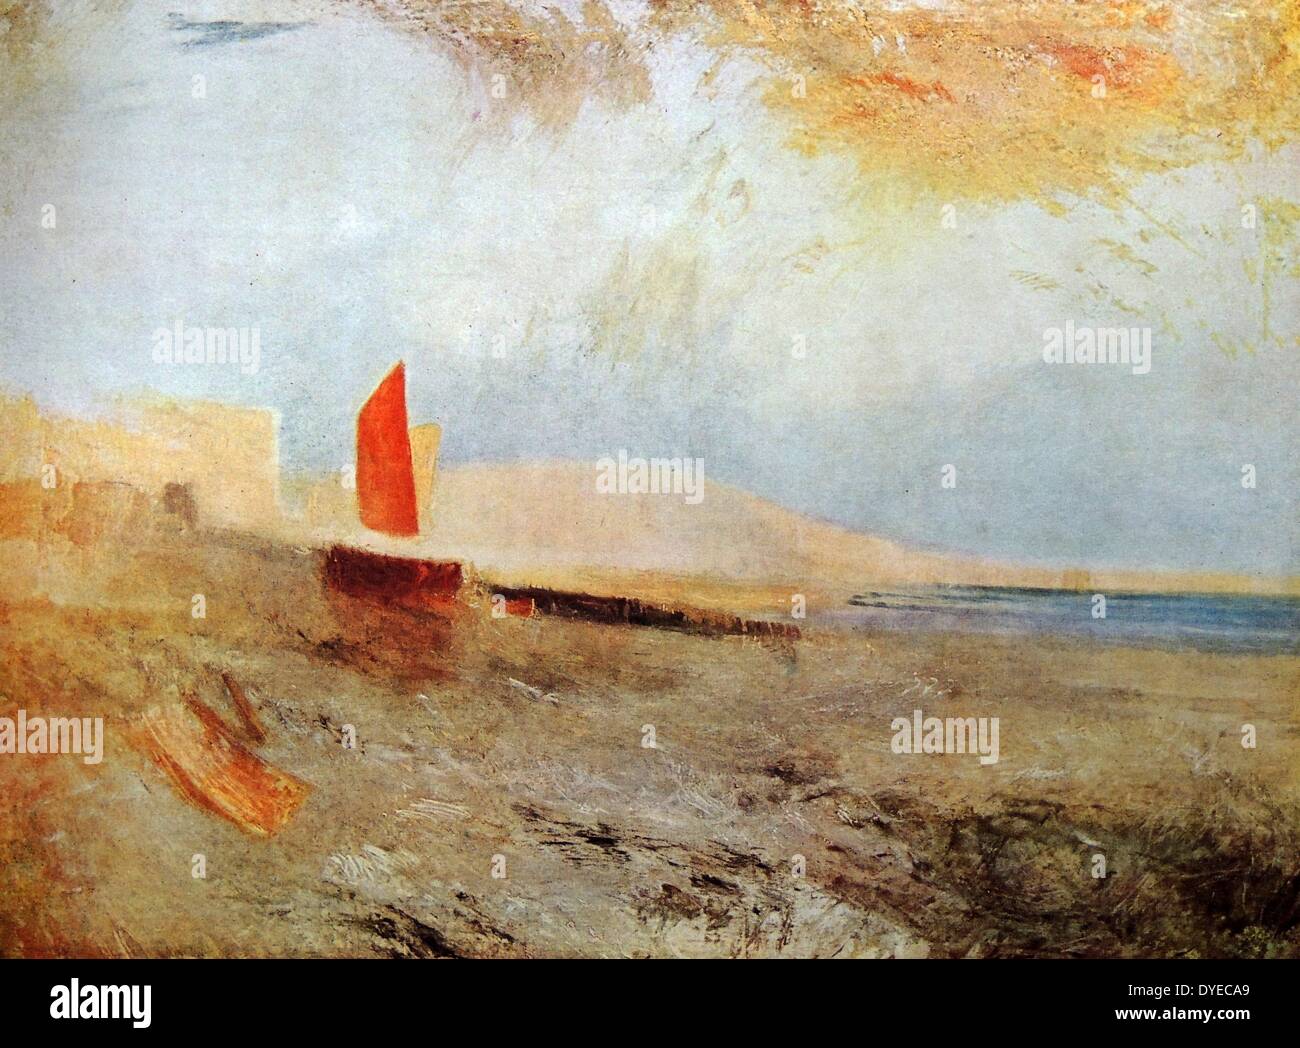 Aquarell Landschaft Gemälde mit dem Titel "Hastings". Das Gemälde zeigt ein einzelnes Boot am Ufer mit einem orangen Segeln. Von Joseph Mallord William Turner (1775 - 1851) englischer romantische Landschaftsmaler. Vom 1818. Stockfoto